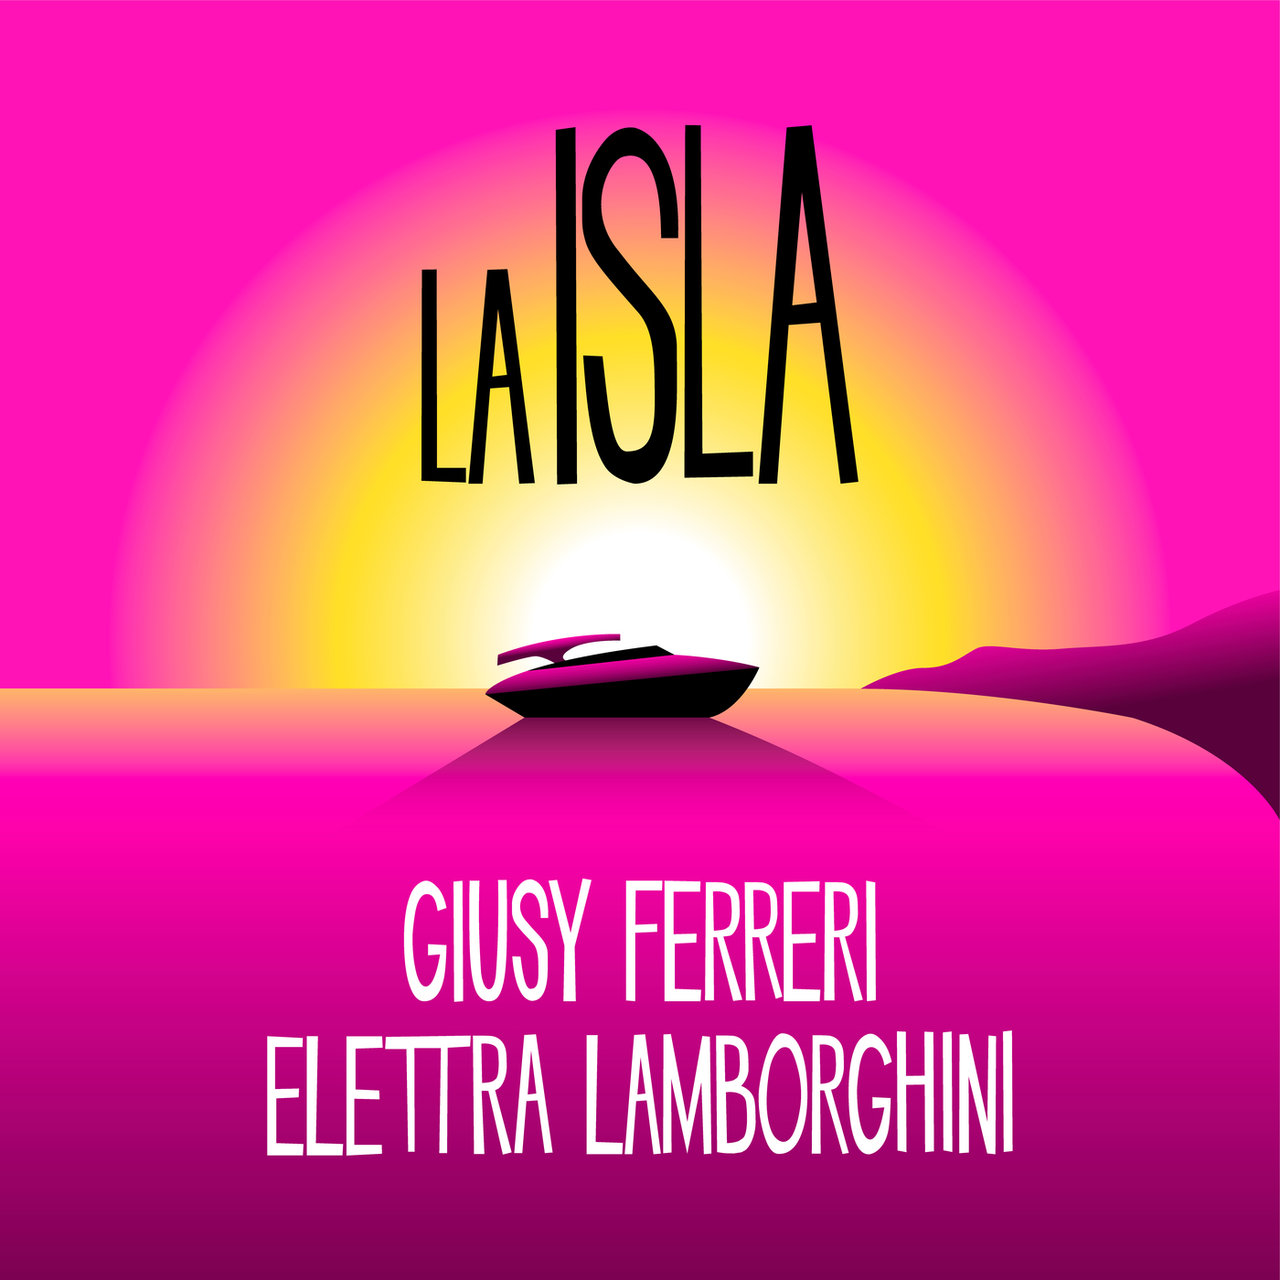 Giusy Ferreri & Elettra Lamborghini LA ISLA cover artwork